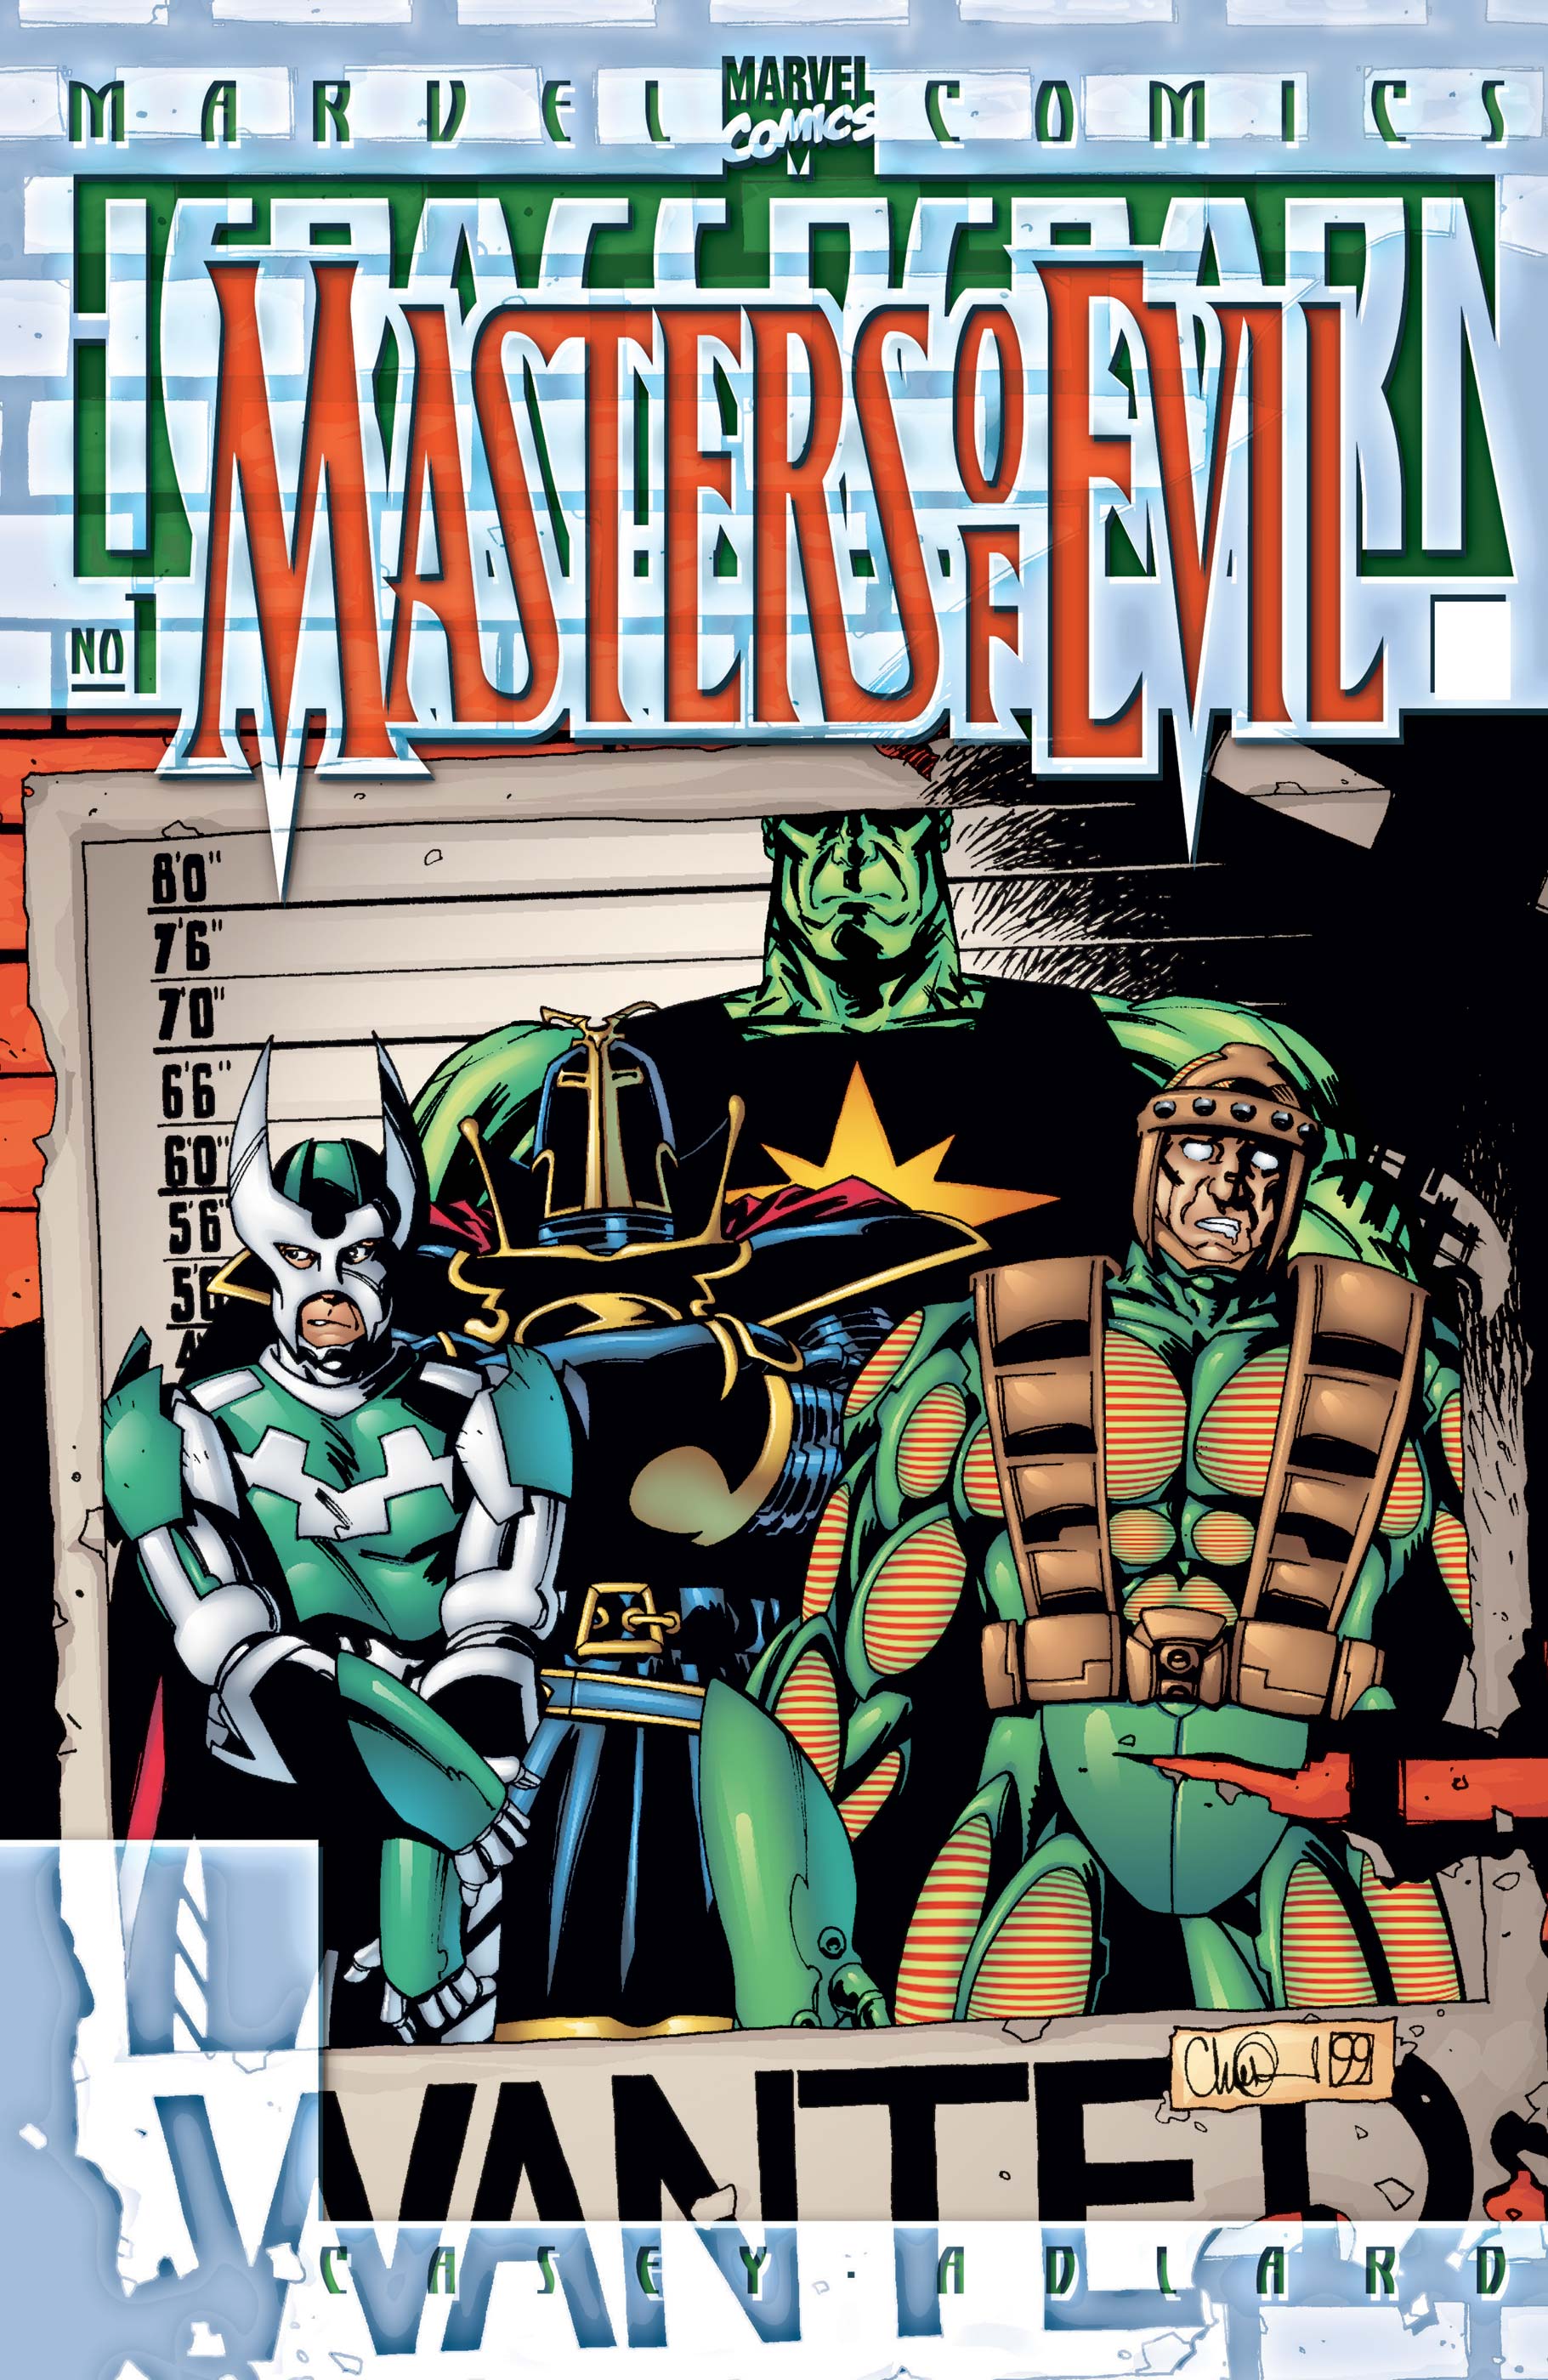 Heroes Reborn: Masters of Evil (2000) #1